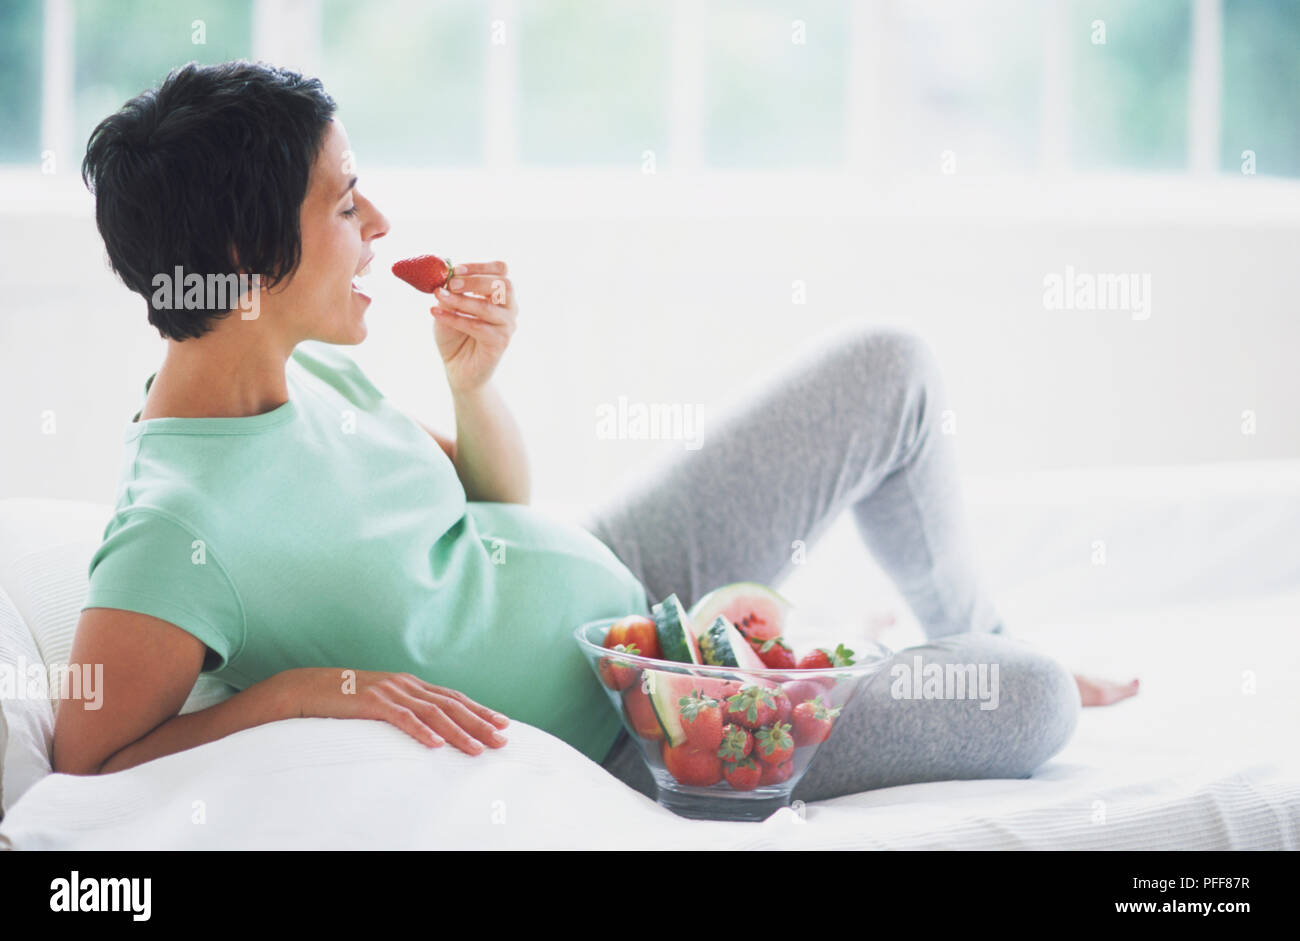 Frau in frühen Stadien der Schwangerschaft liegen auf dem Sofa und essen Erdbeeren aus Glas Schüssel, Seitenansicht. Stockfoto